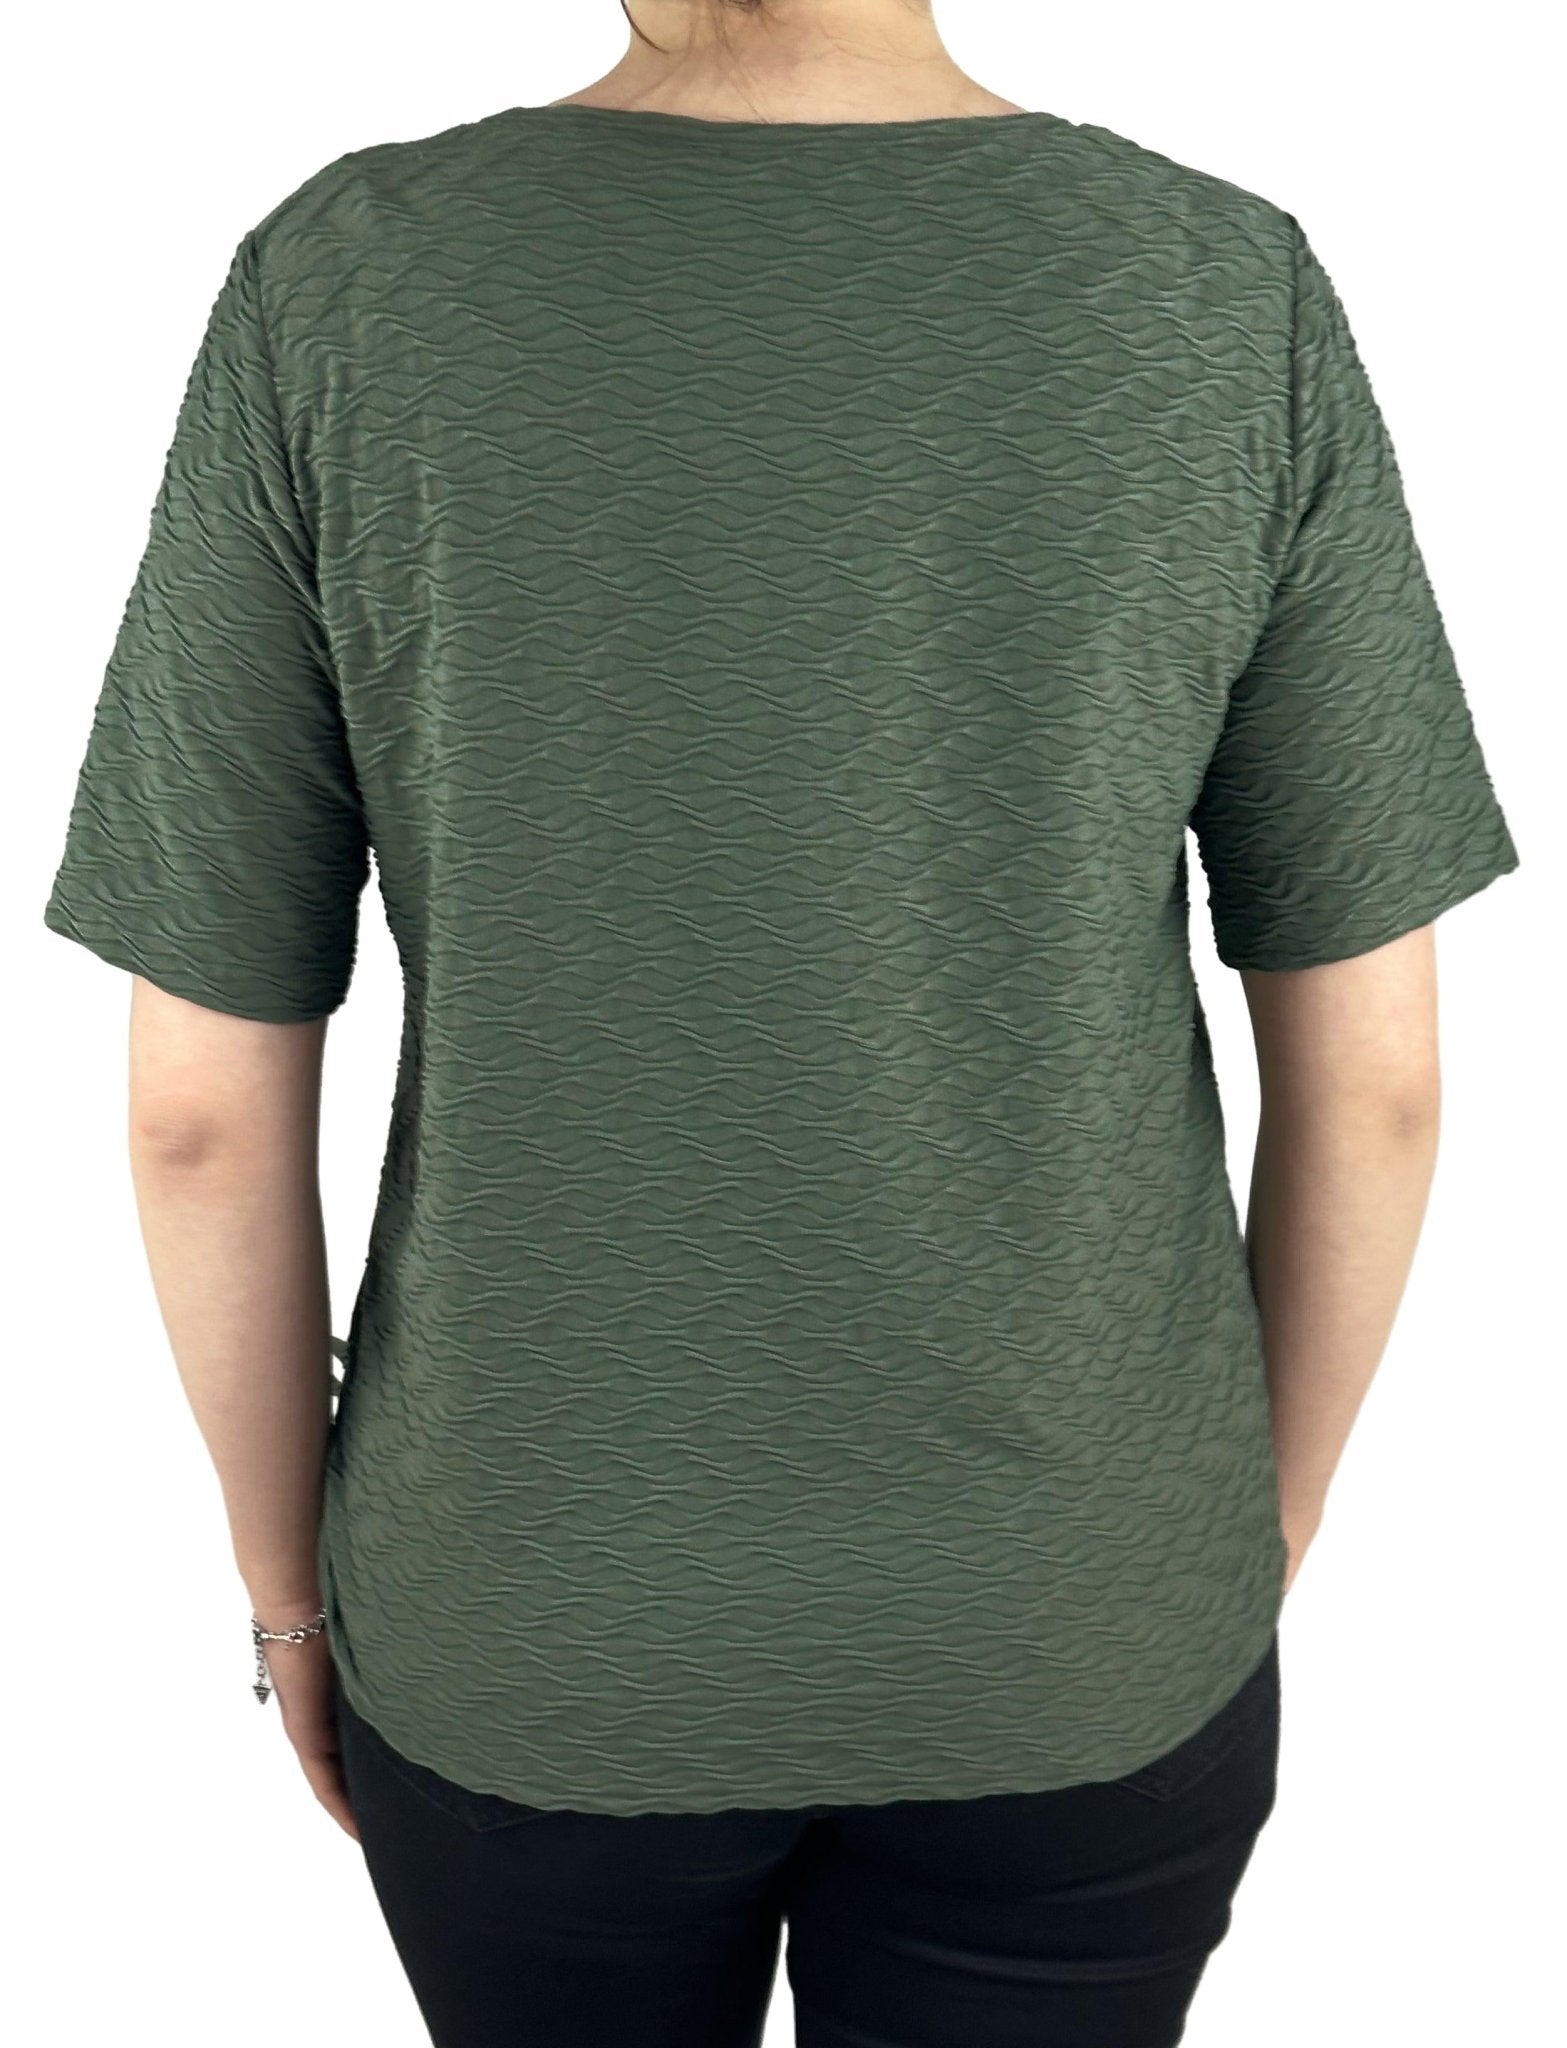 Frank Walder Shirt 714.407. Mode von Frank Walder